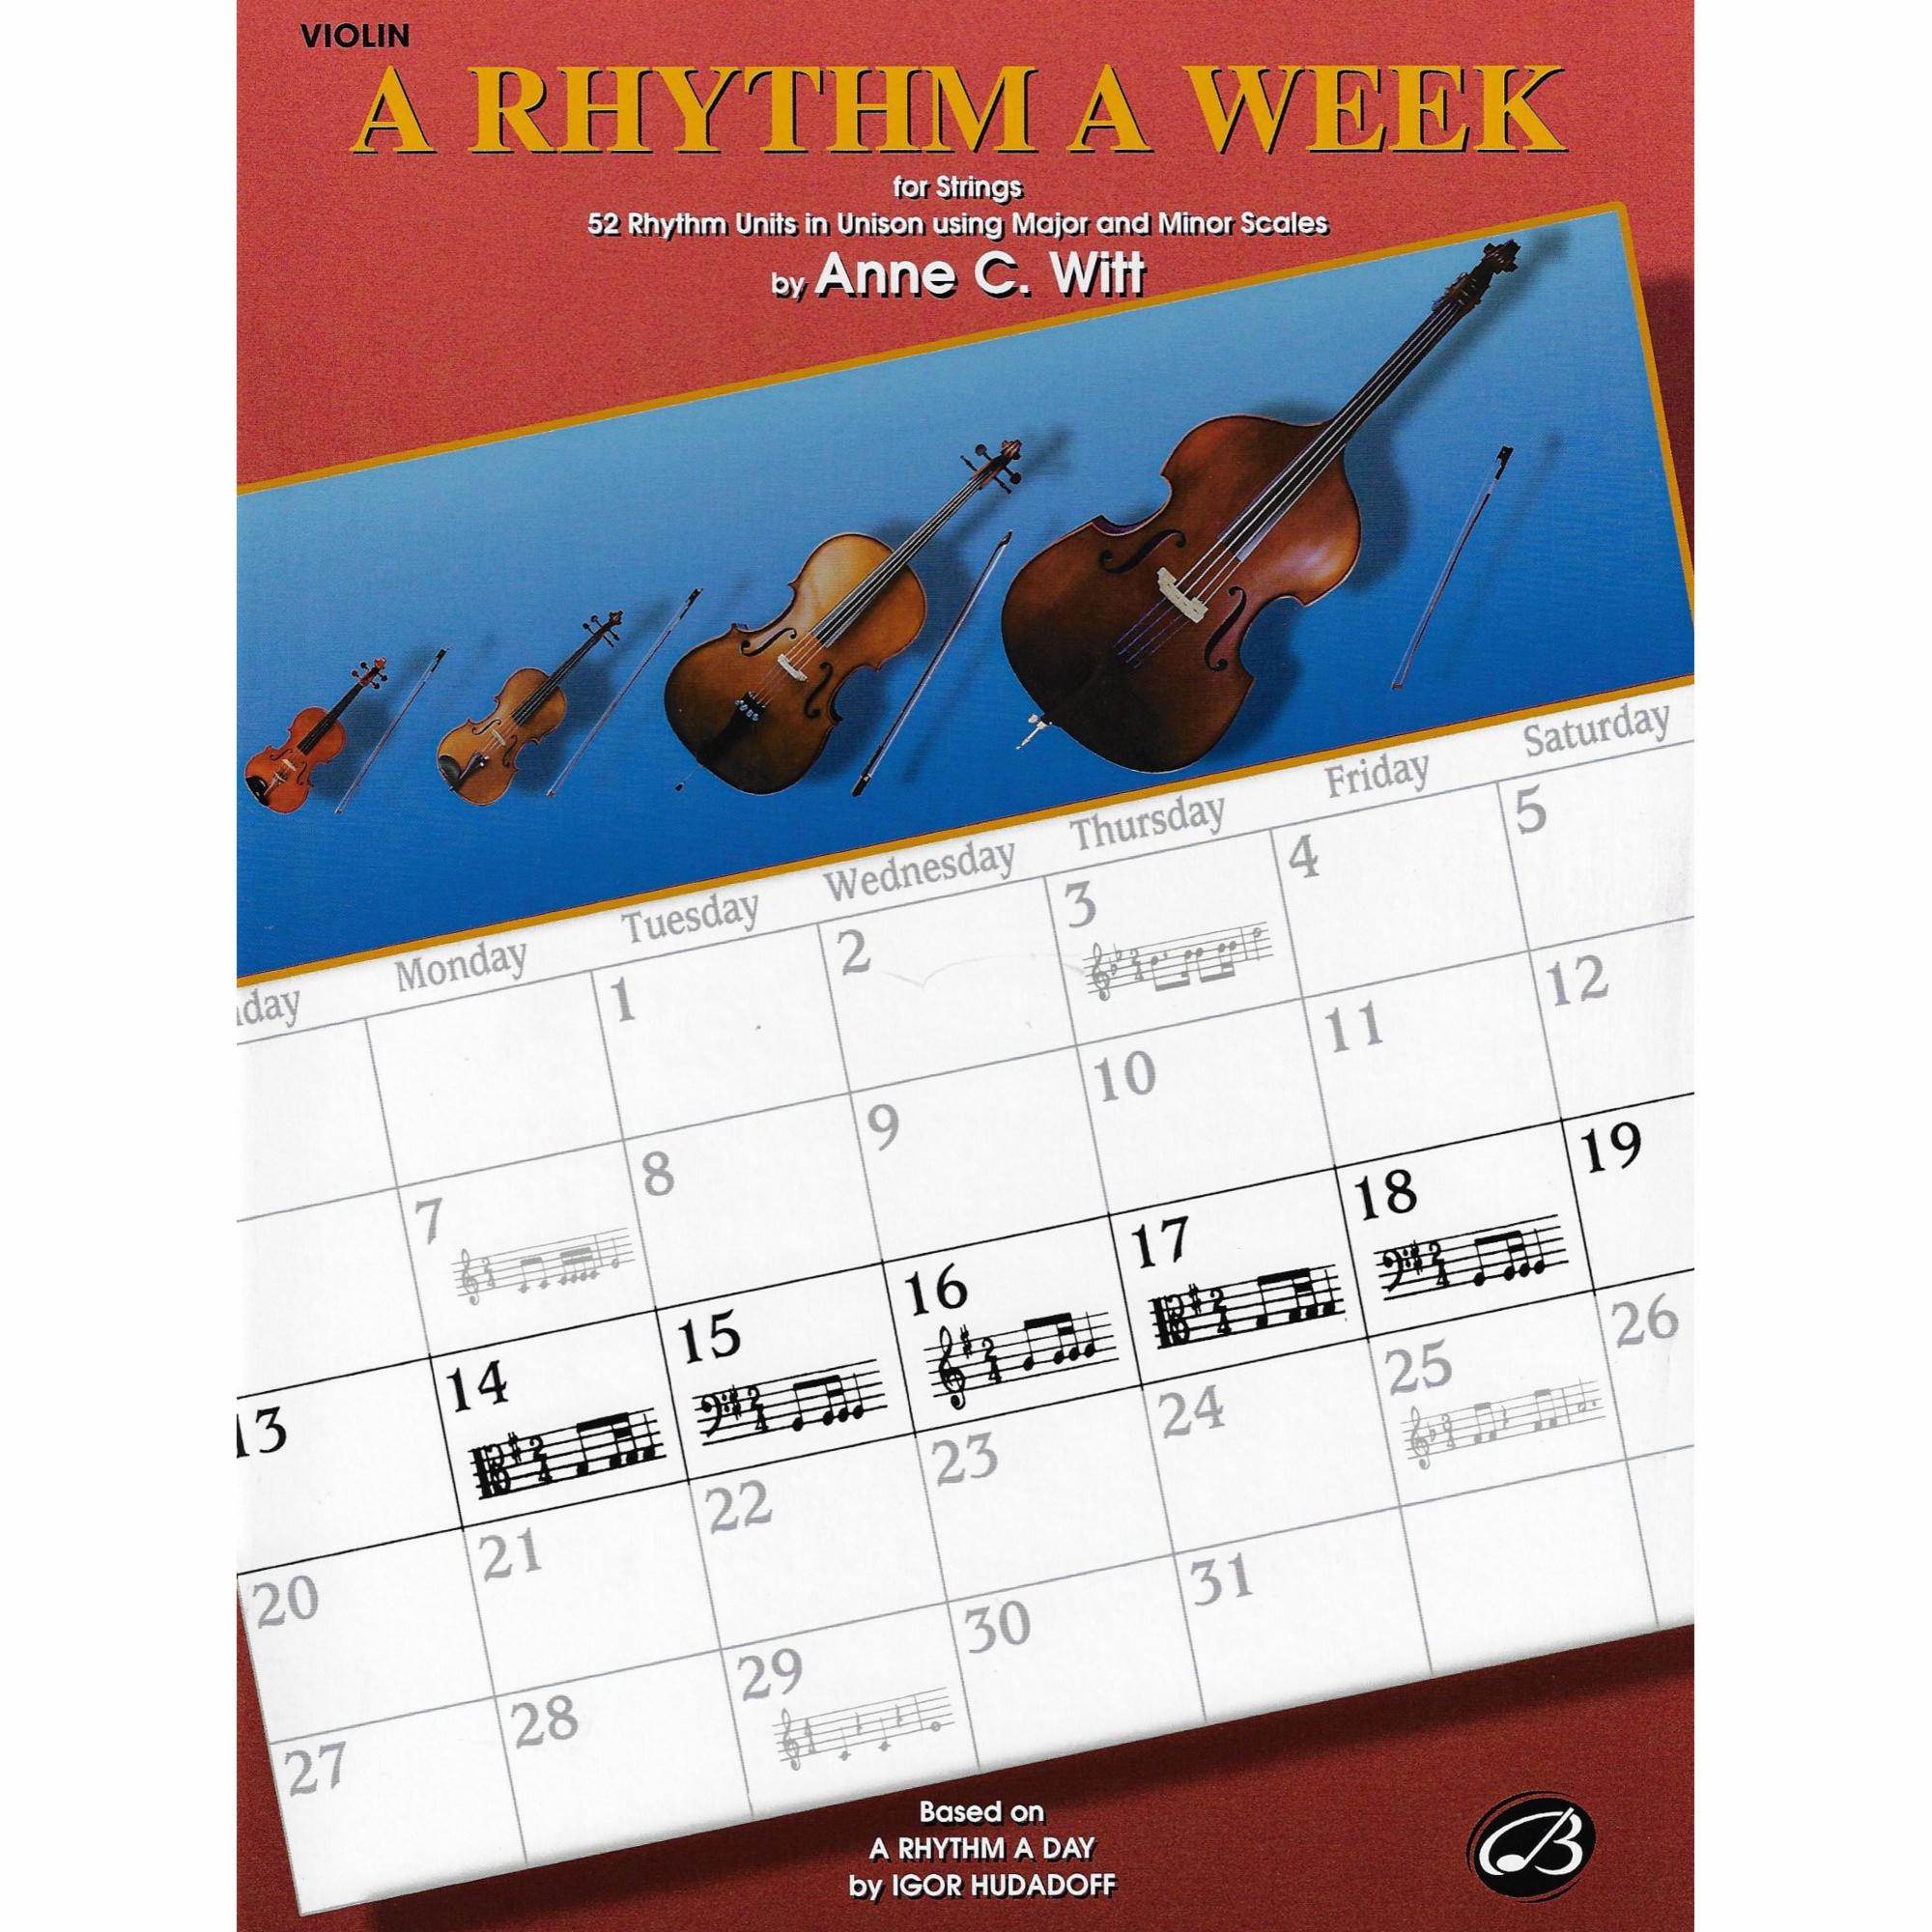 A Rhythm A Week for Strings